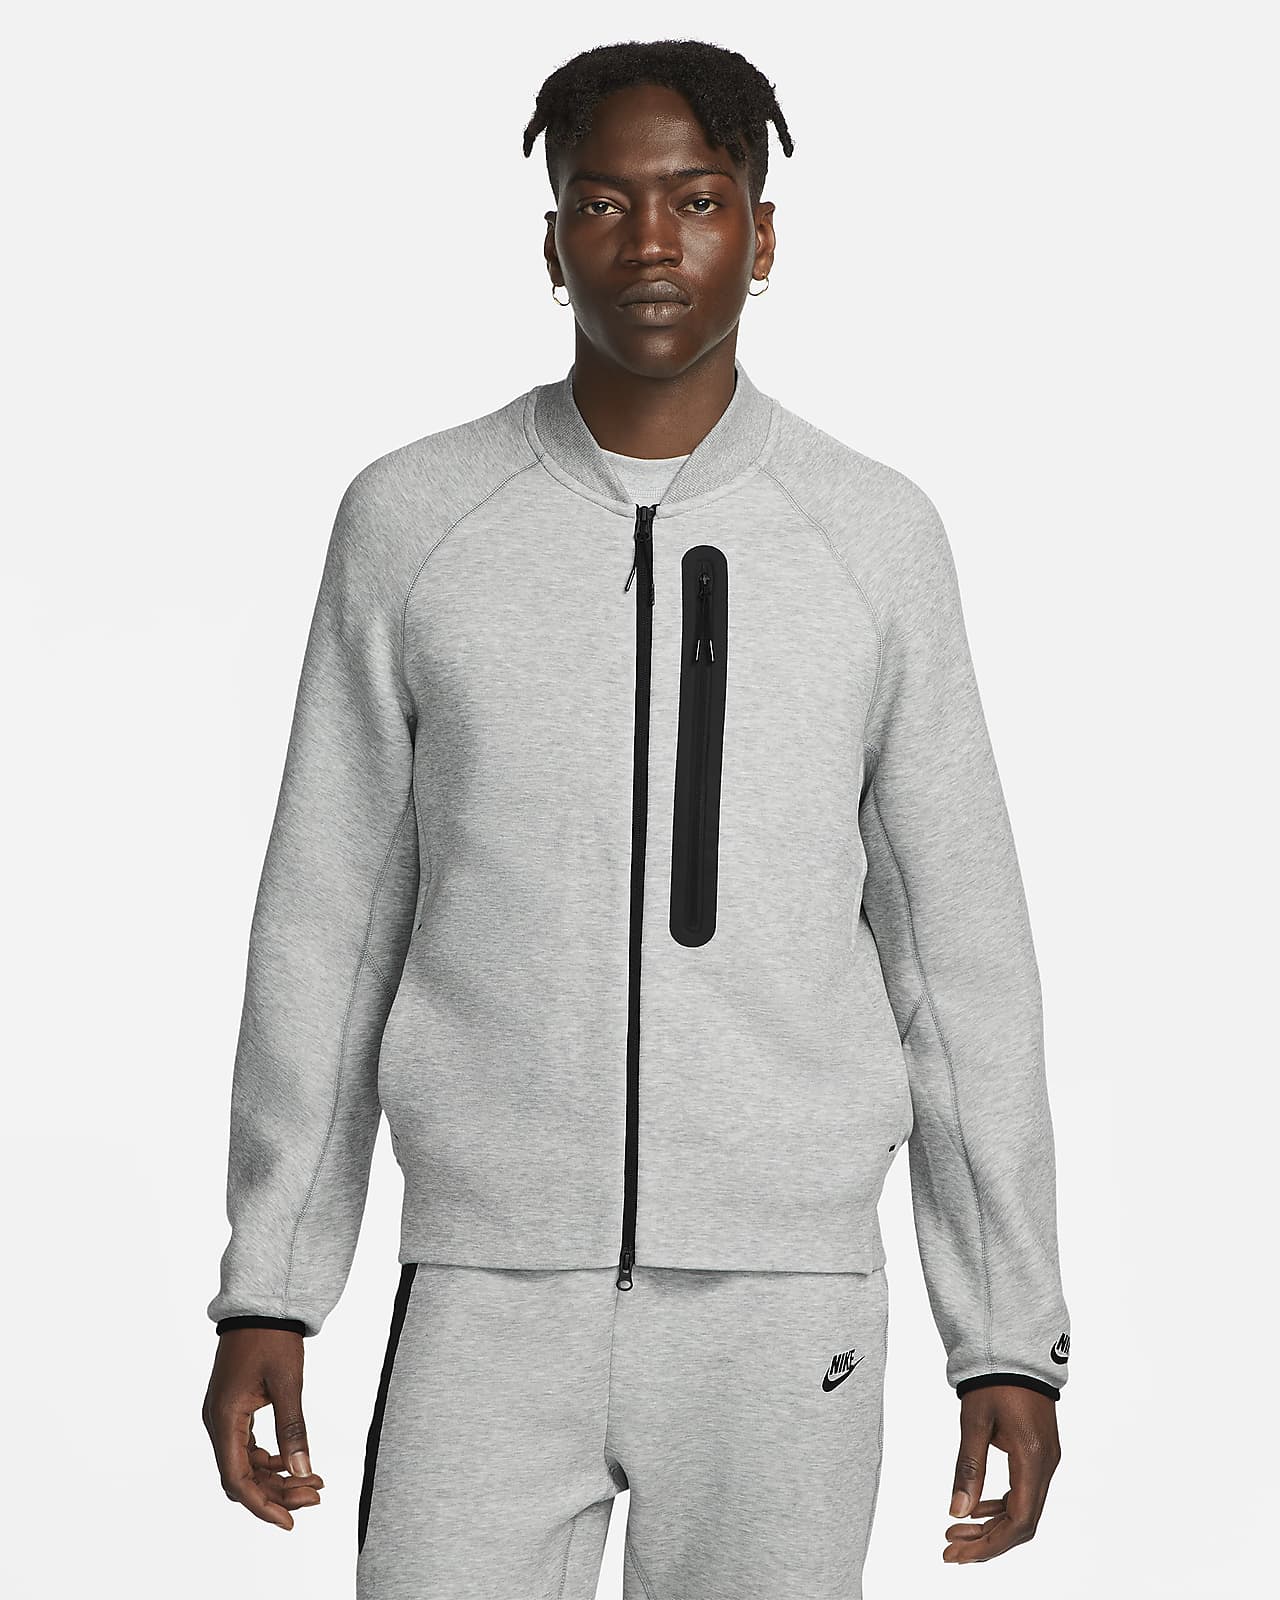 Nike Sportswear Tech Fleece Men's Bomber Jacket. Nike LU